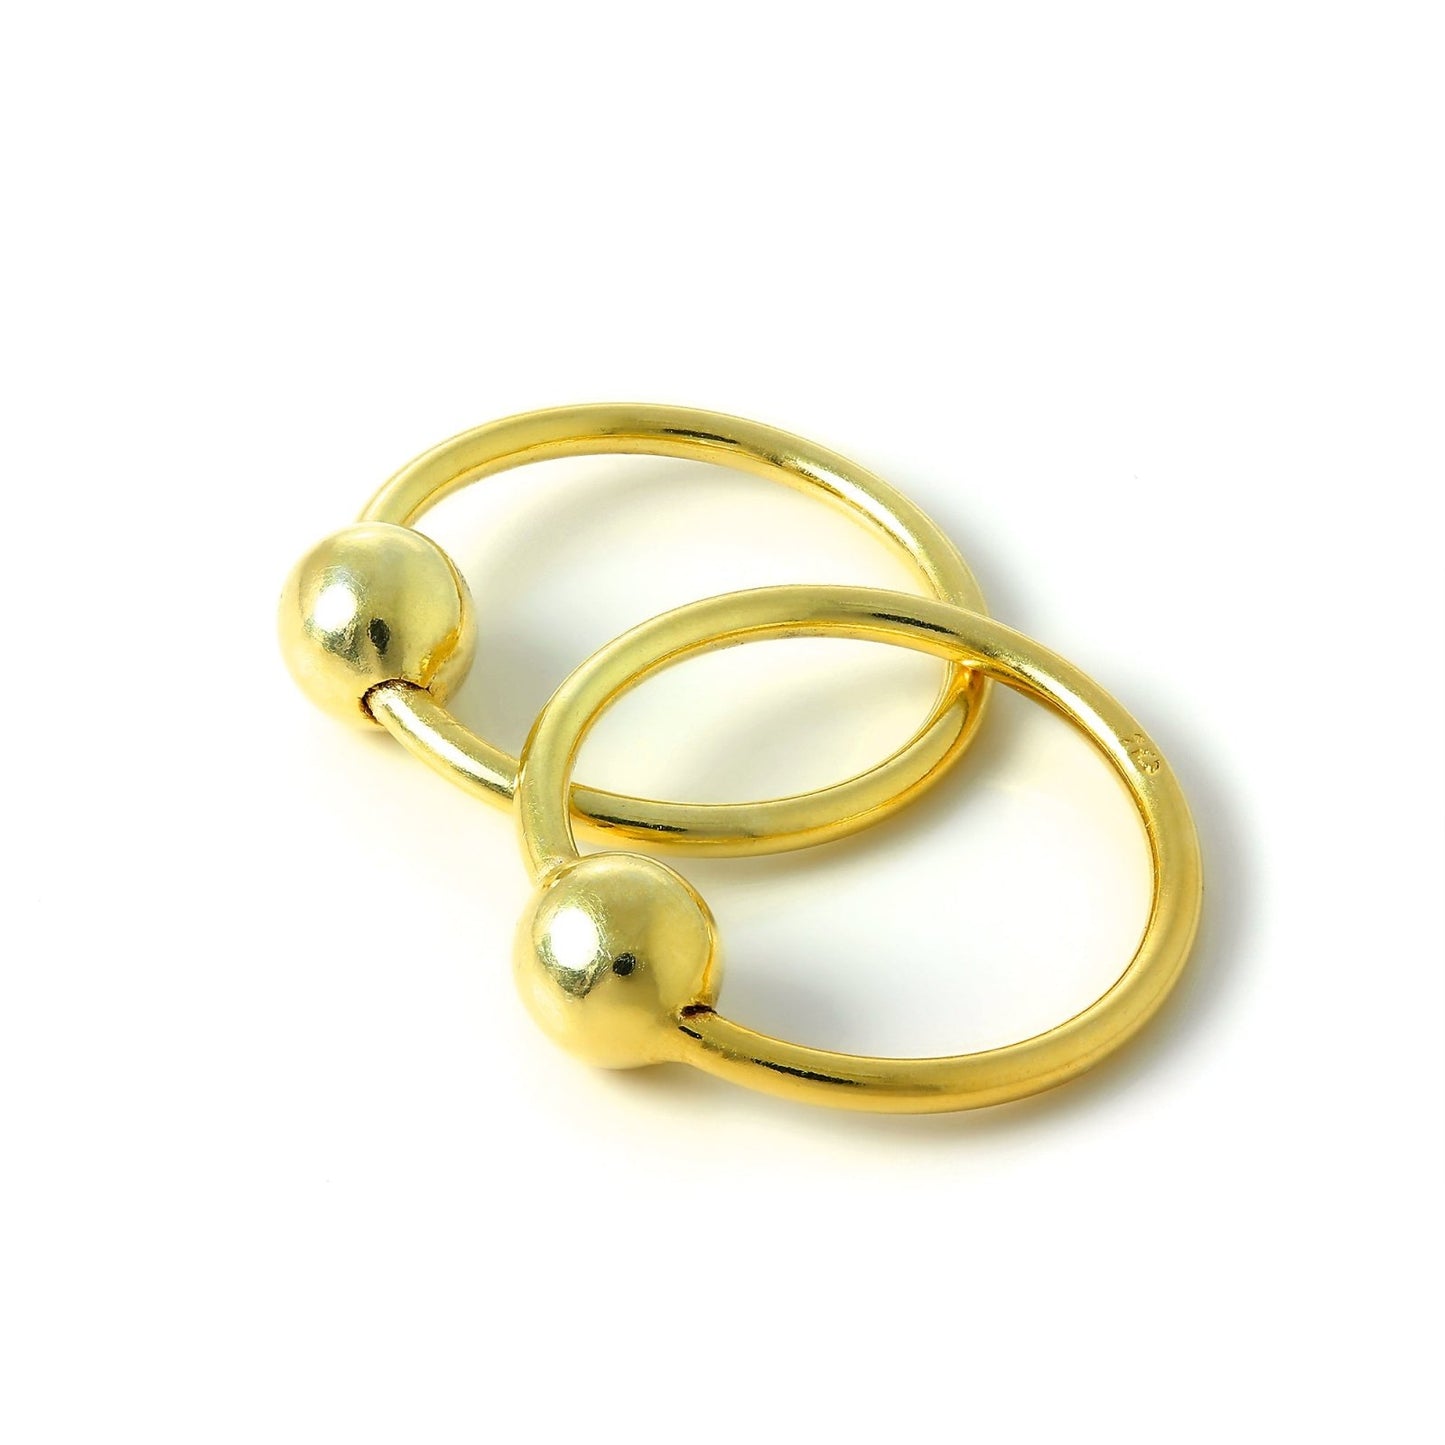 Gold Plated Sterling Silver 15mm Sleeper Hoop Earrings with 4mm Bead Hoops - jewellerybox